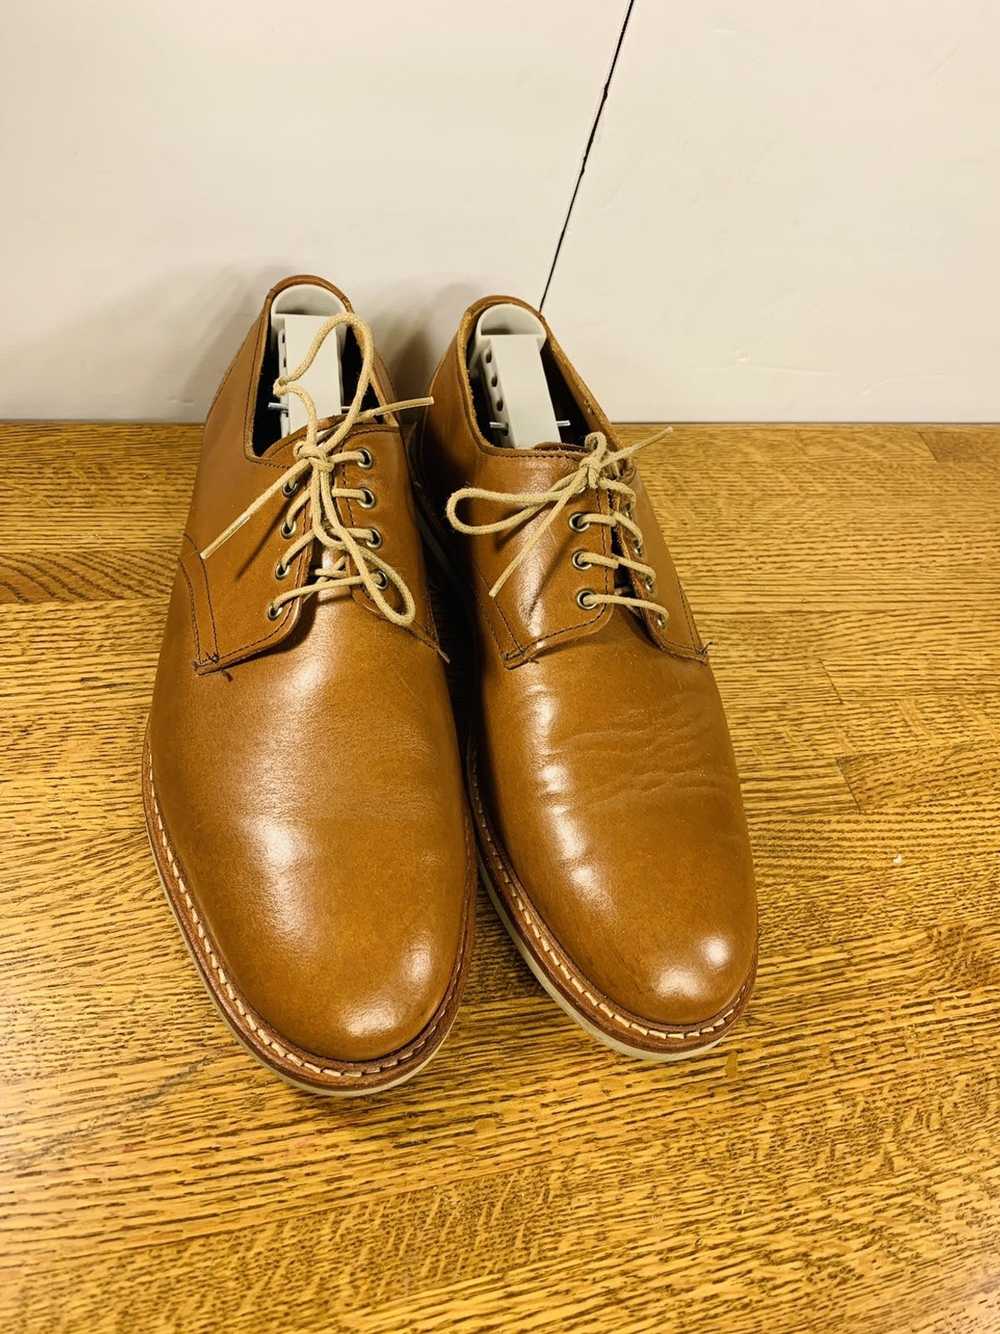 Allen Edmonds Allen Edmonds Men’s Oxfords Shoes - image 1